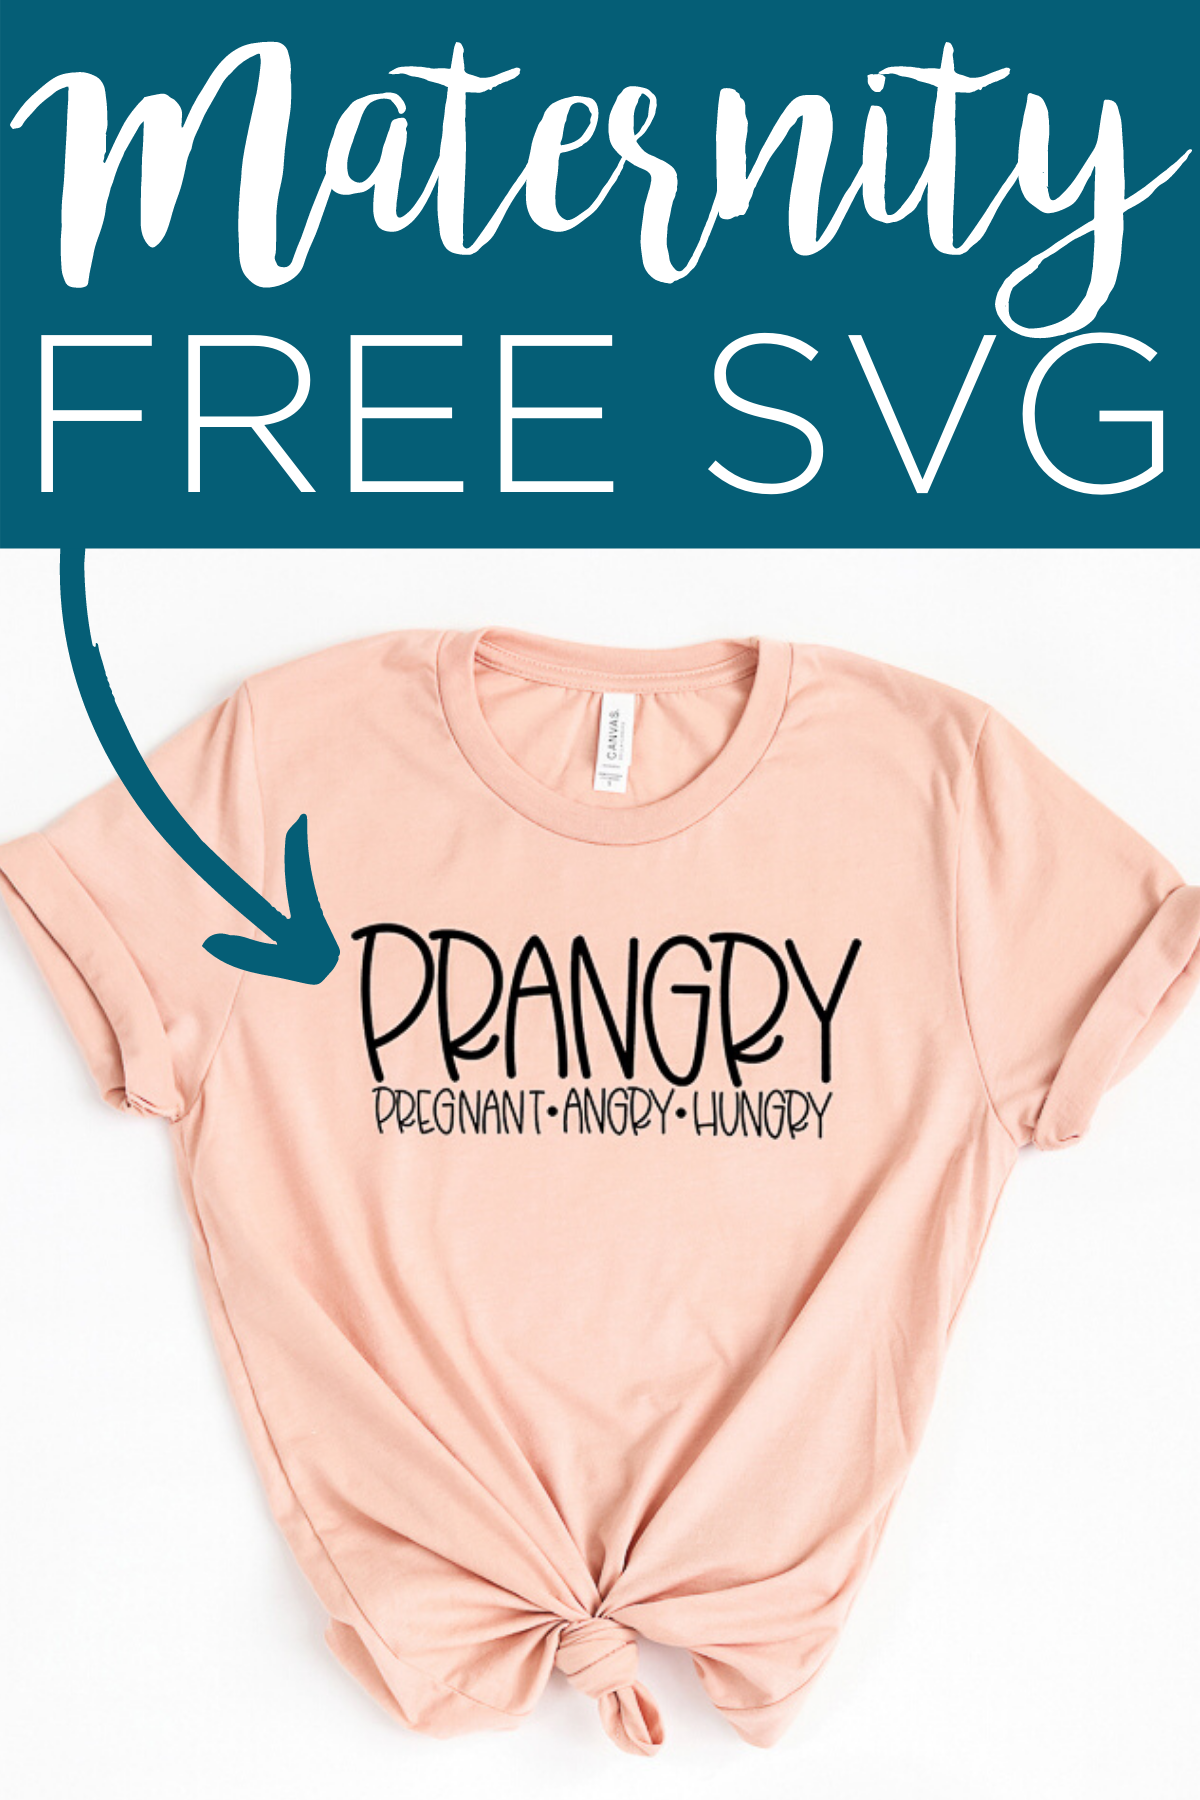 Obtenez un SVG de grossesse drôle gratuitement puis utilisez-le pour faire une jolie chemise de maternité! Si vous êtes 